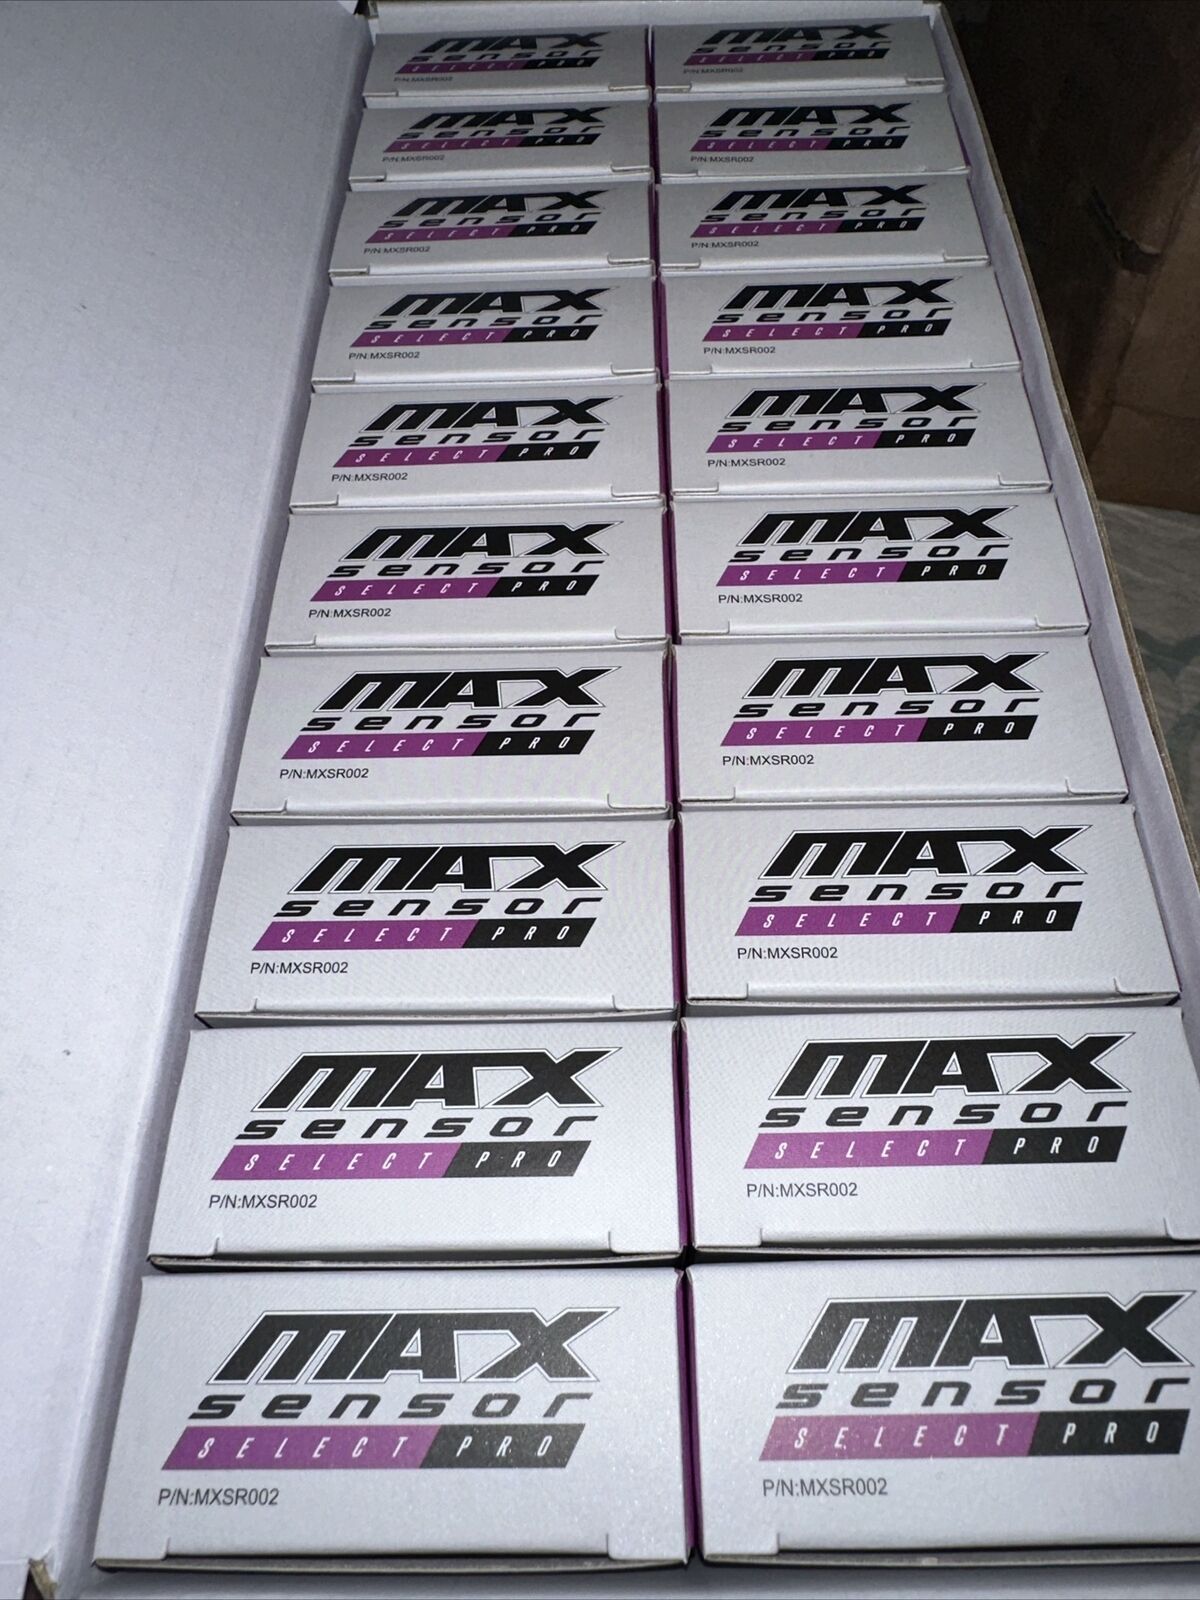 Lot of 20 Max Sensor MXSR002 Select Pro TPMS Sensor Rubber Stem 